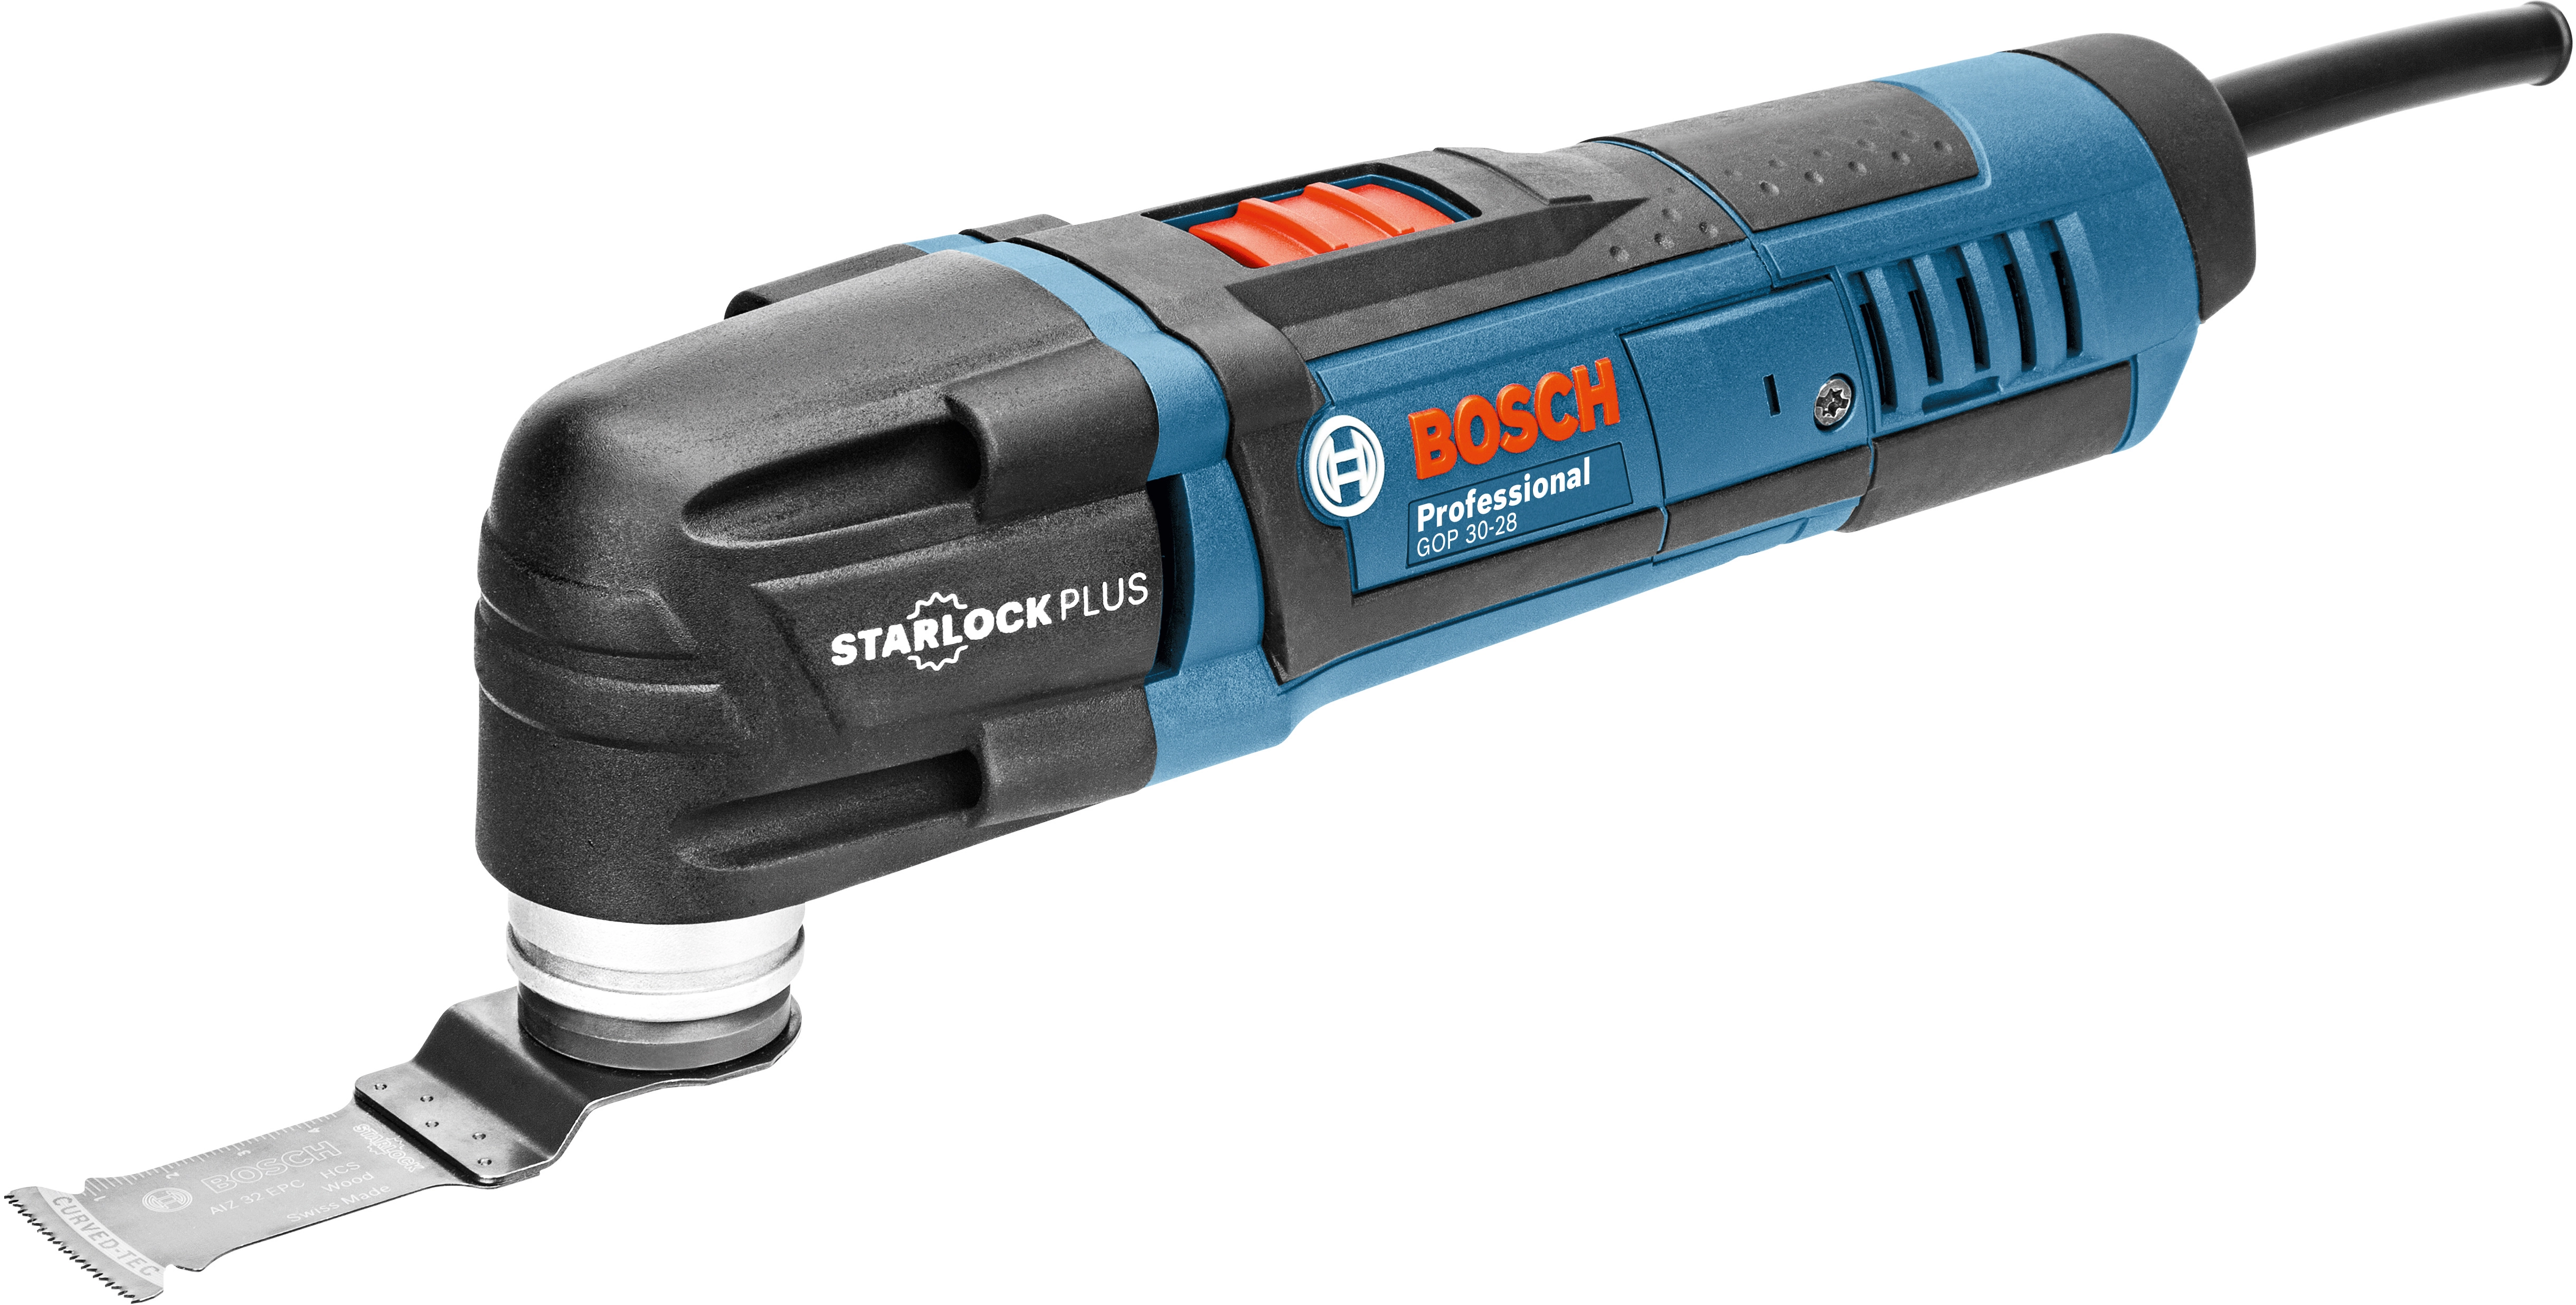 W 30-28 300 Multi-Cutter GOP Professional Bosch